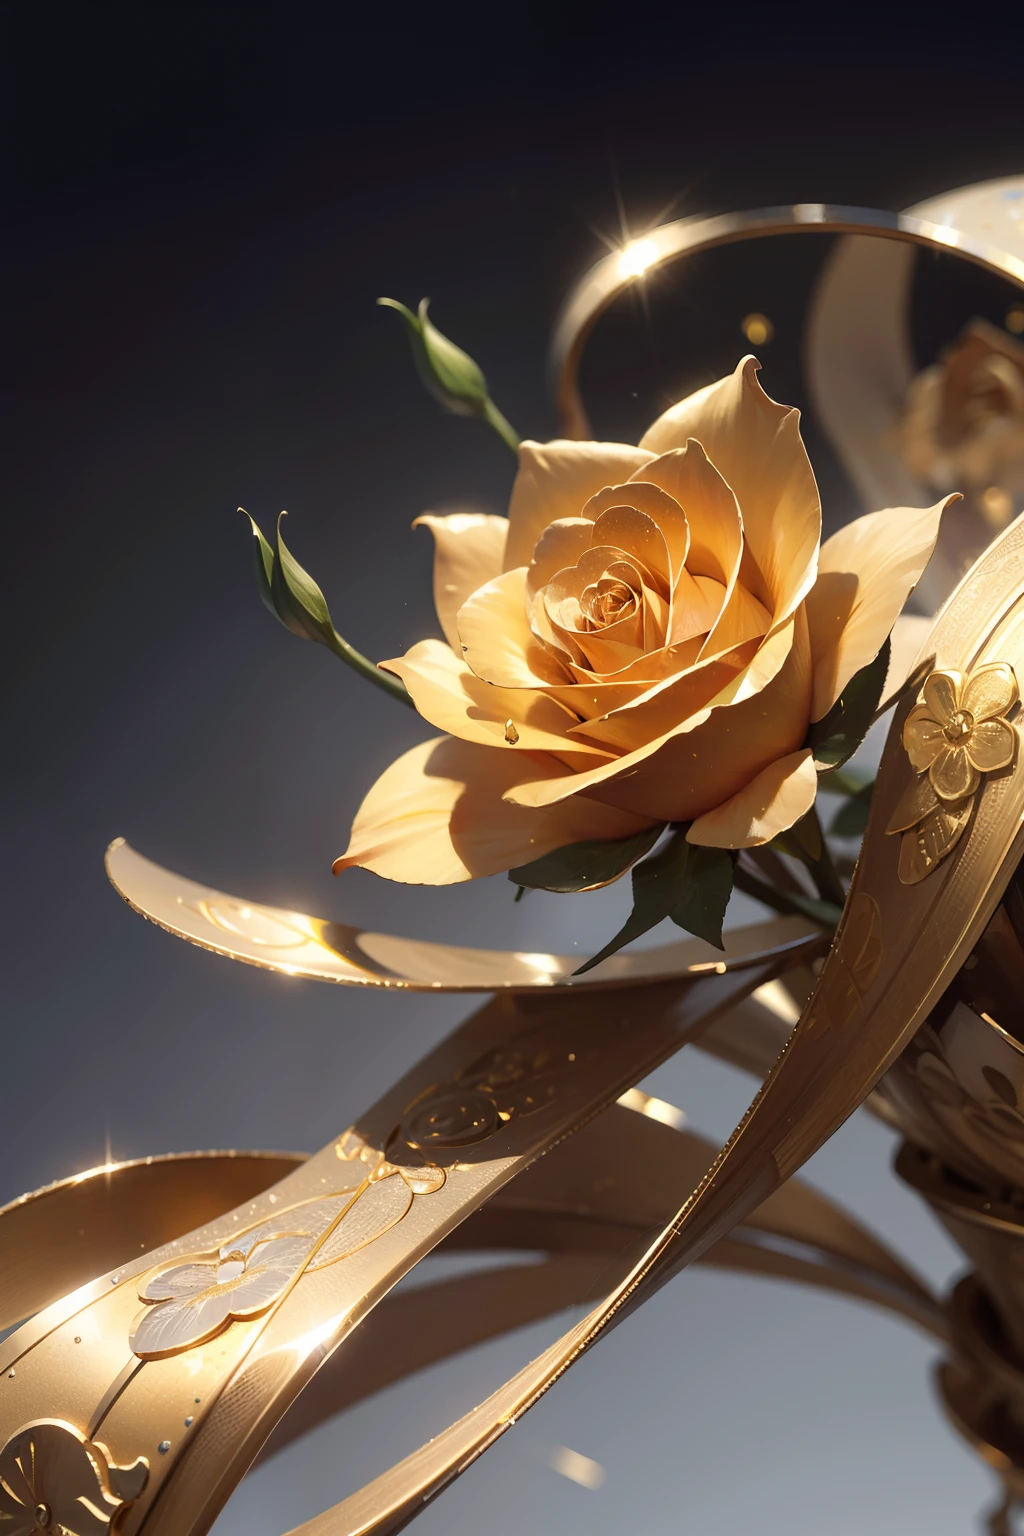 1つの完全な金色の金属製のバラ，花びらはつながって橋を形成します，金属的な質感，すべての金属，ゴールドパーツ，金属製反射材，黄金の花，スーパーディテール，超鮮明な画質，無地の背景